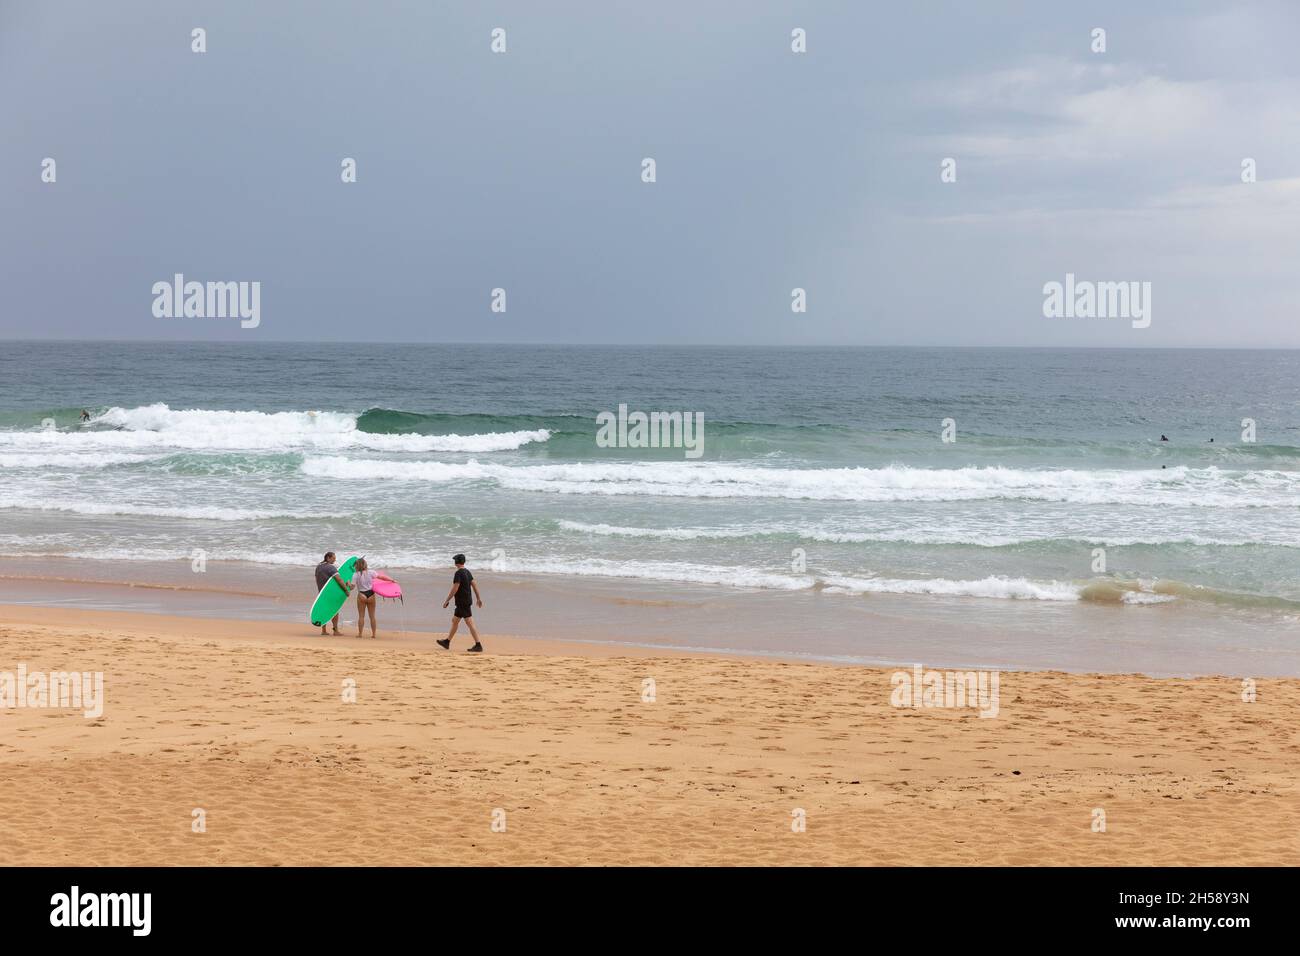 Dos surfistas se pararon en la playa de Manly como hombre en negro haciendo ejercicios pasea, Sydney día nublado, Australia Foto de stock